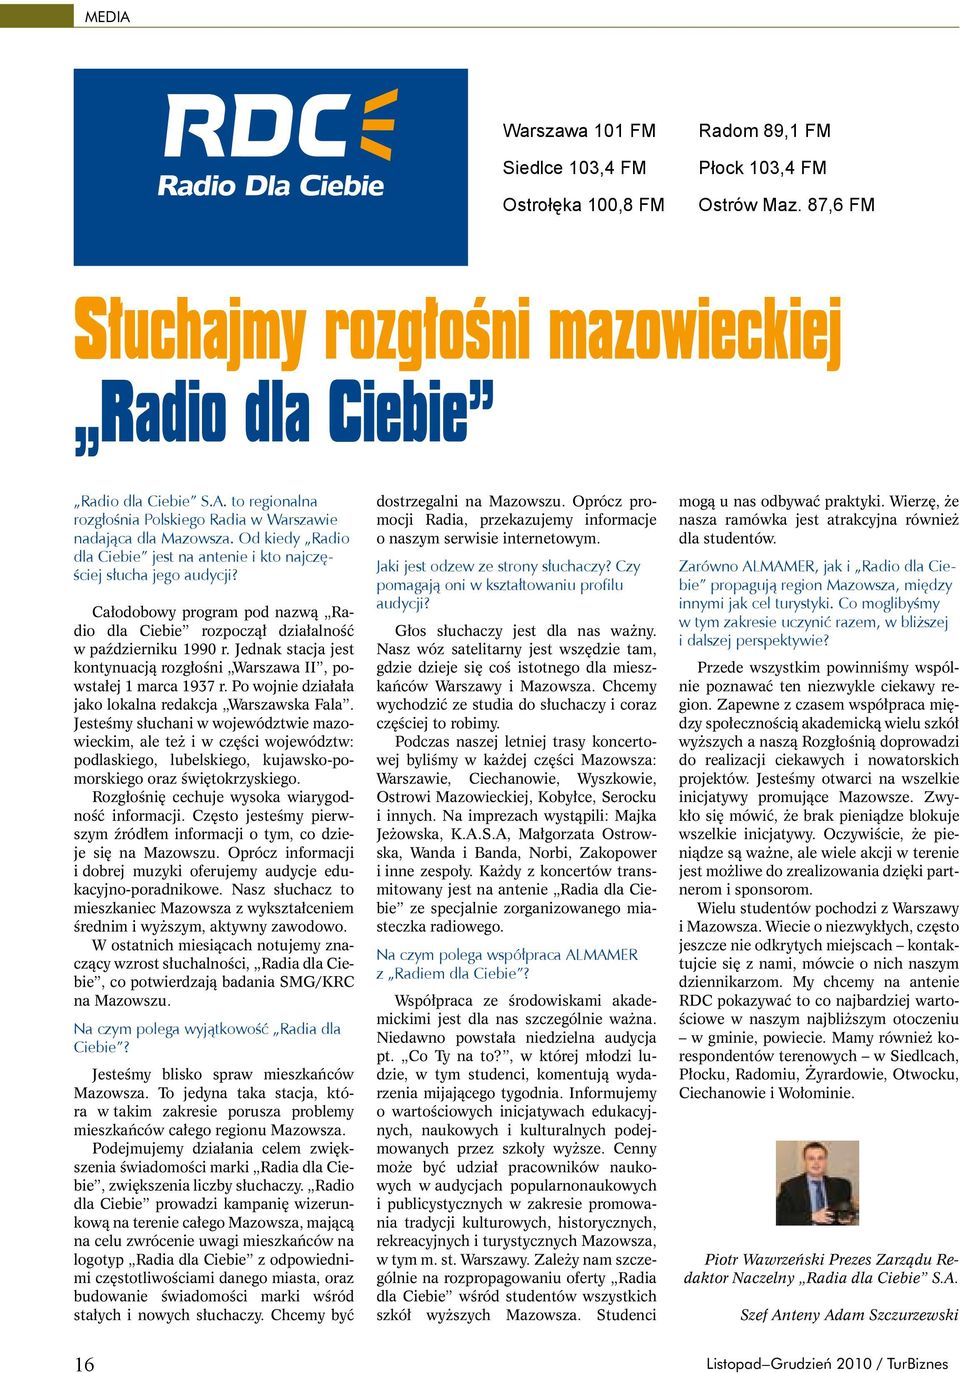 Całodobowy program pod nazwą Radio dla Ciebie rozpoczął działalność w październiku 1990 r. Jednak stacja jest kontynuacją rozgłośni Warszawa II, powstałej 1 marca 1937 r.